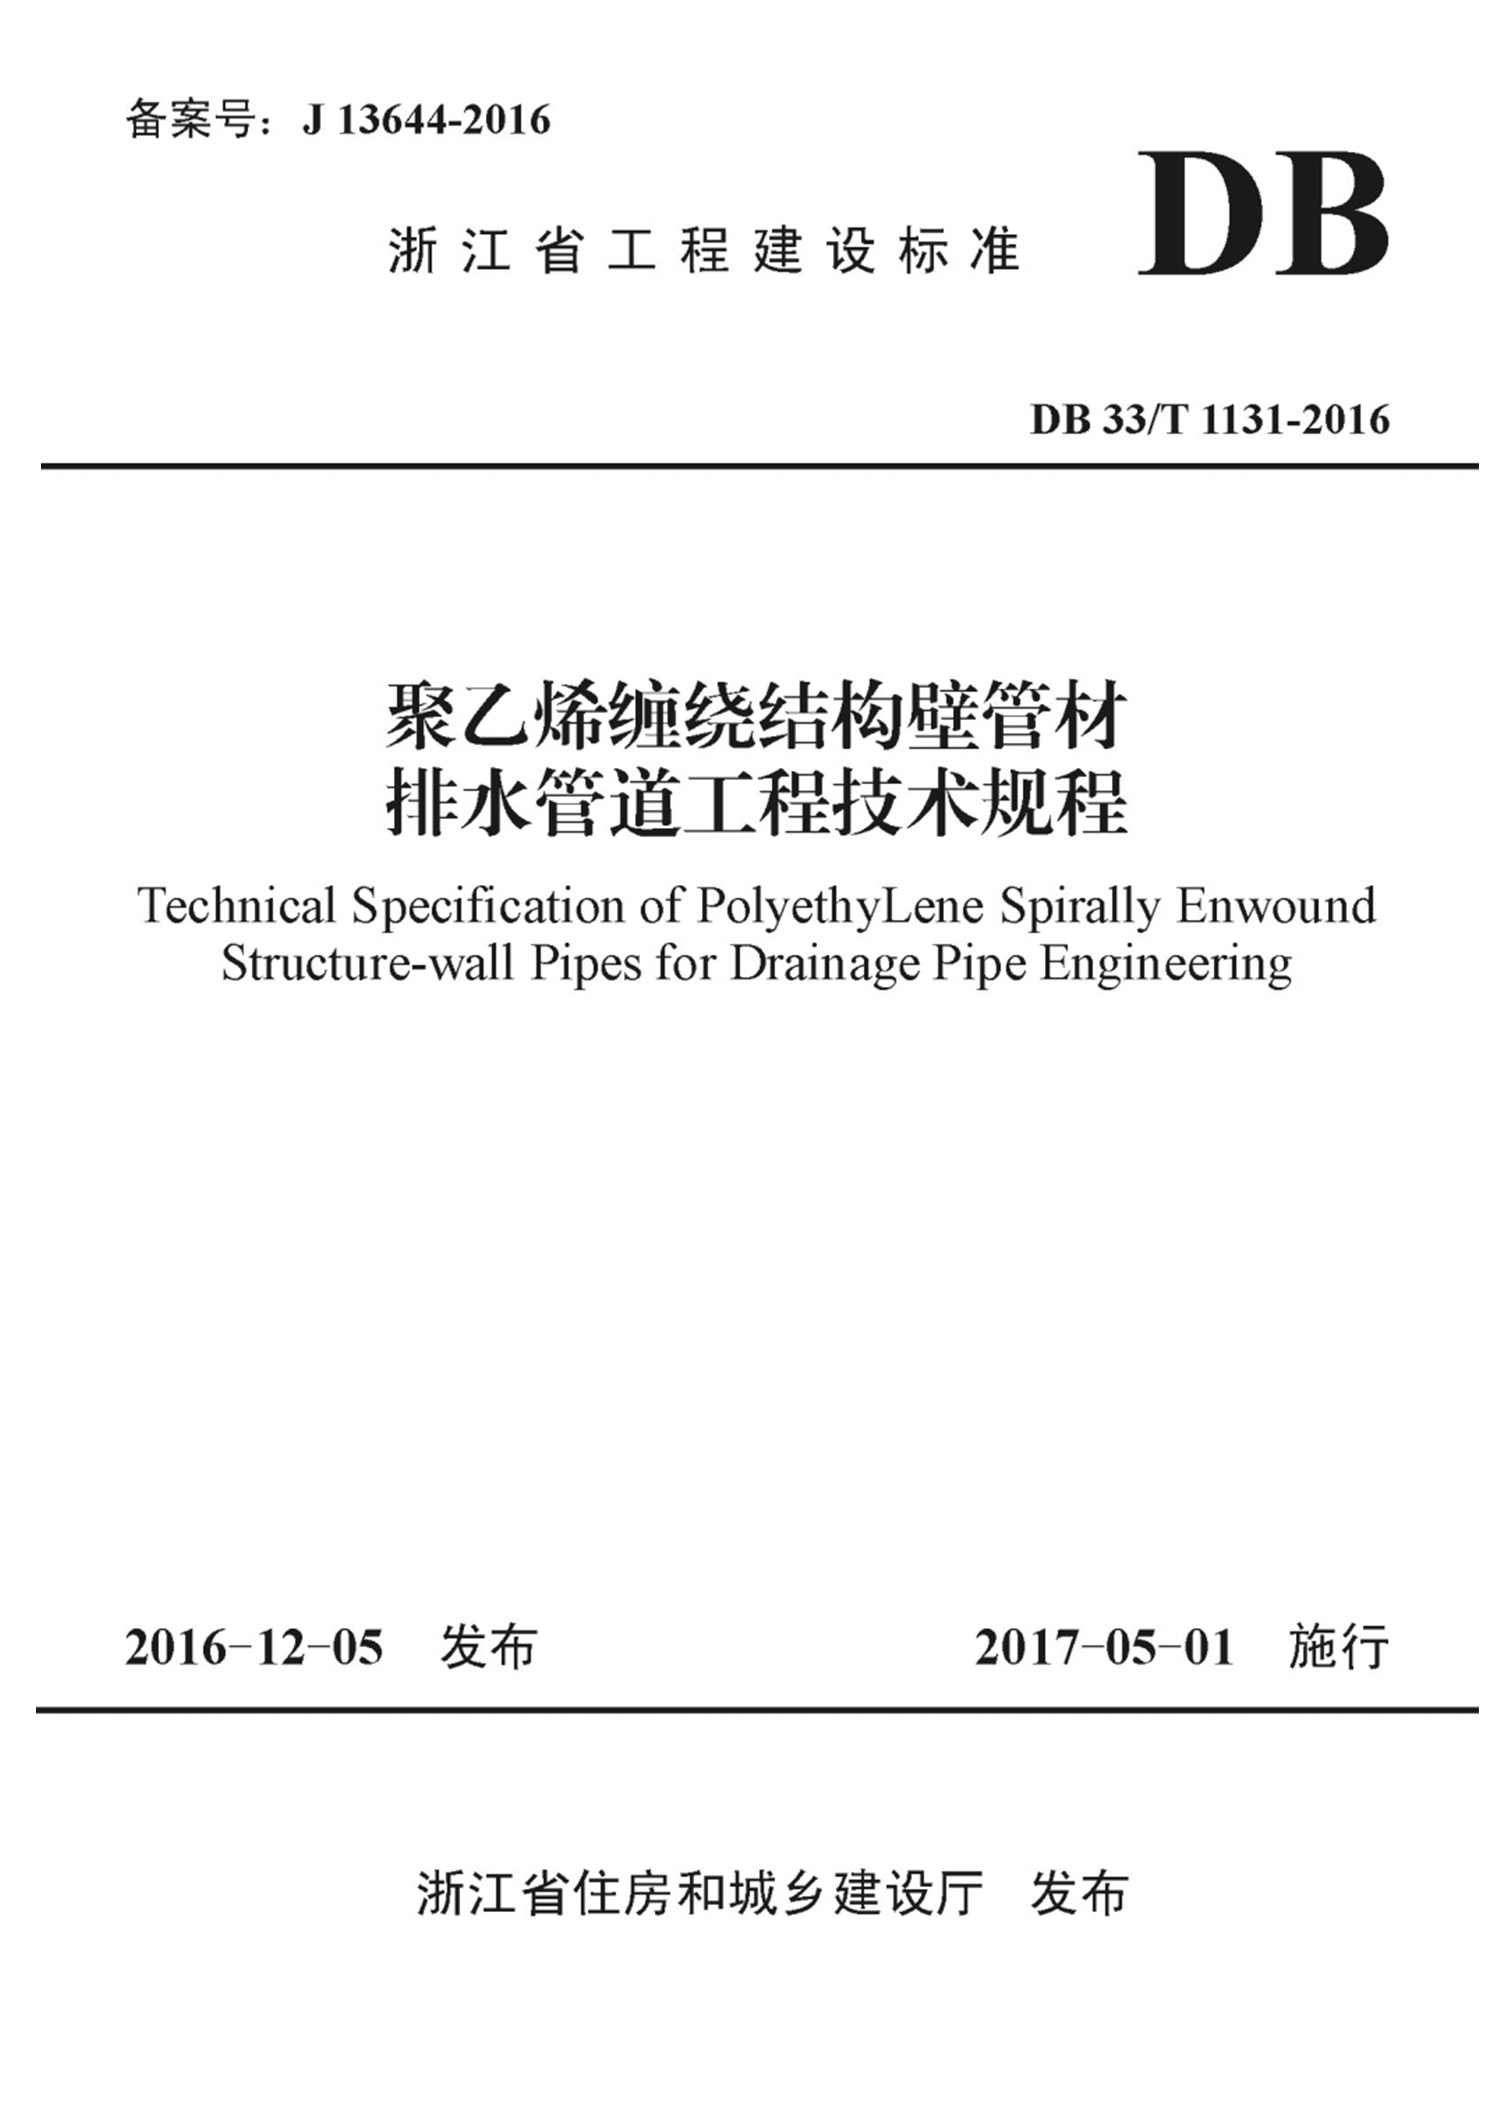 聚乙烯缠绕结构壁管材排水管道工程技术规程